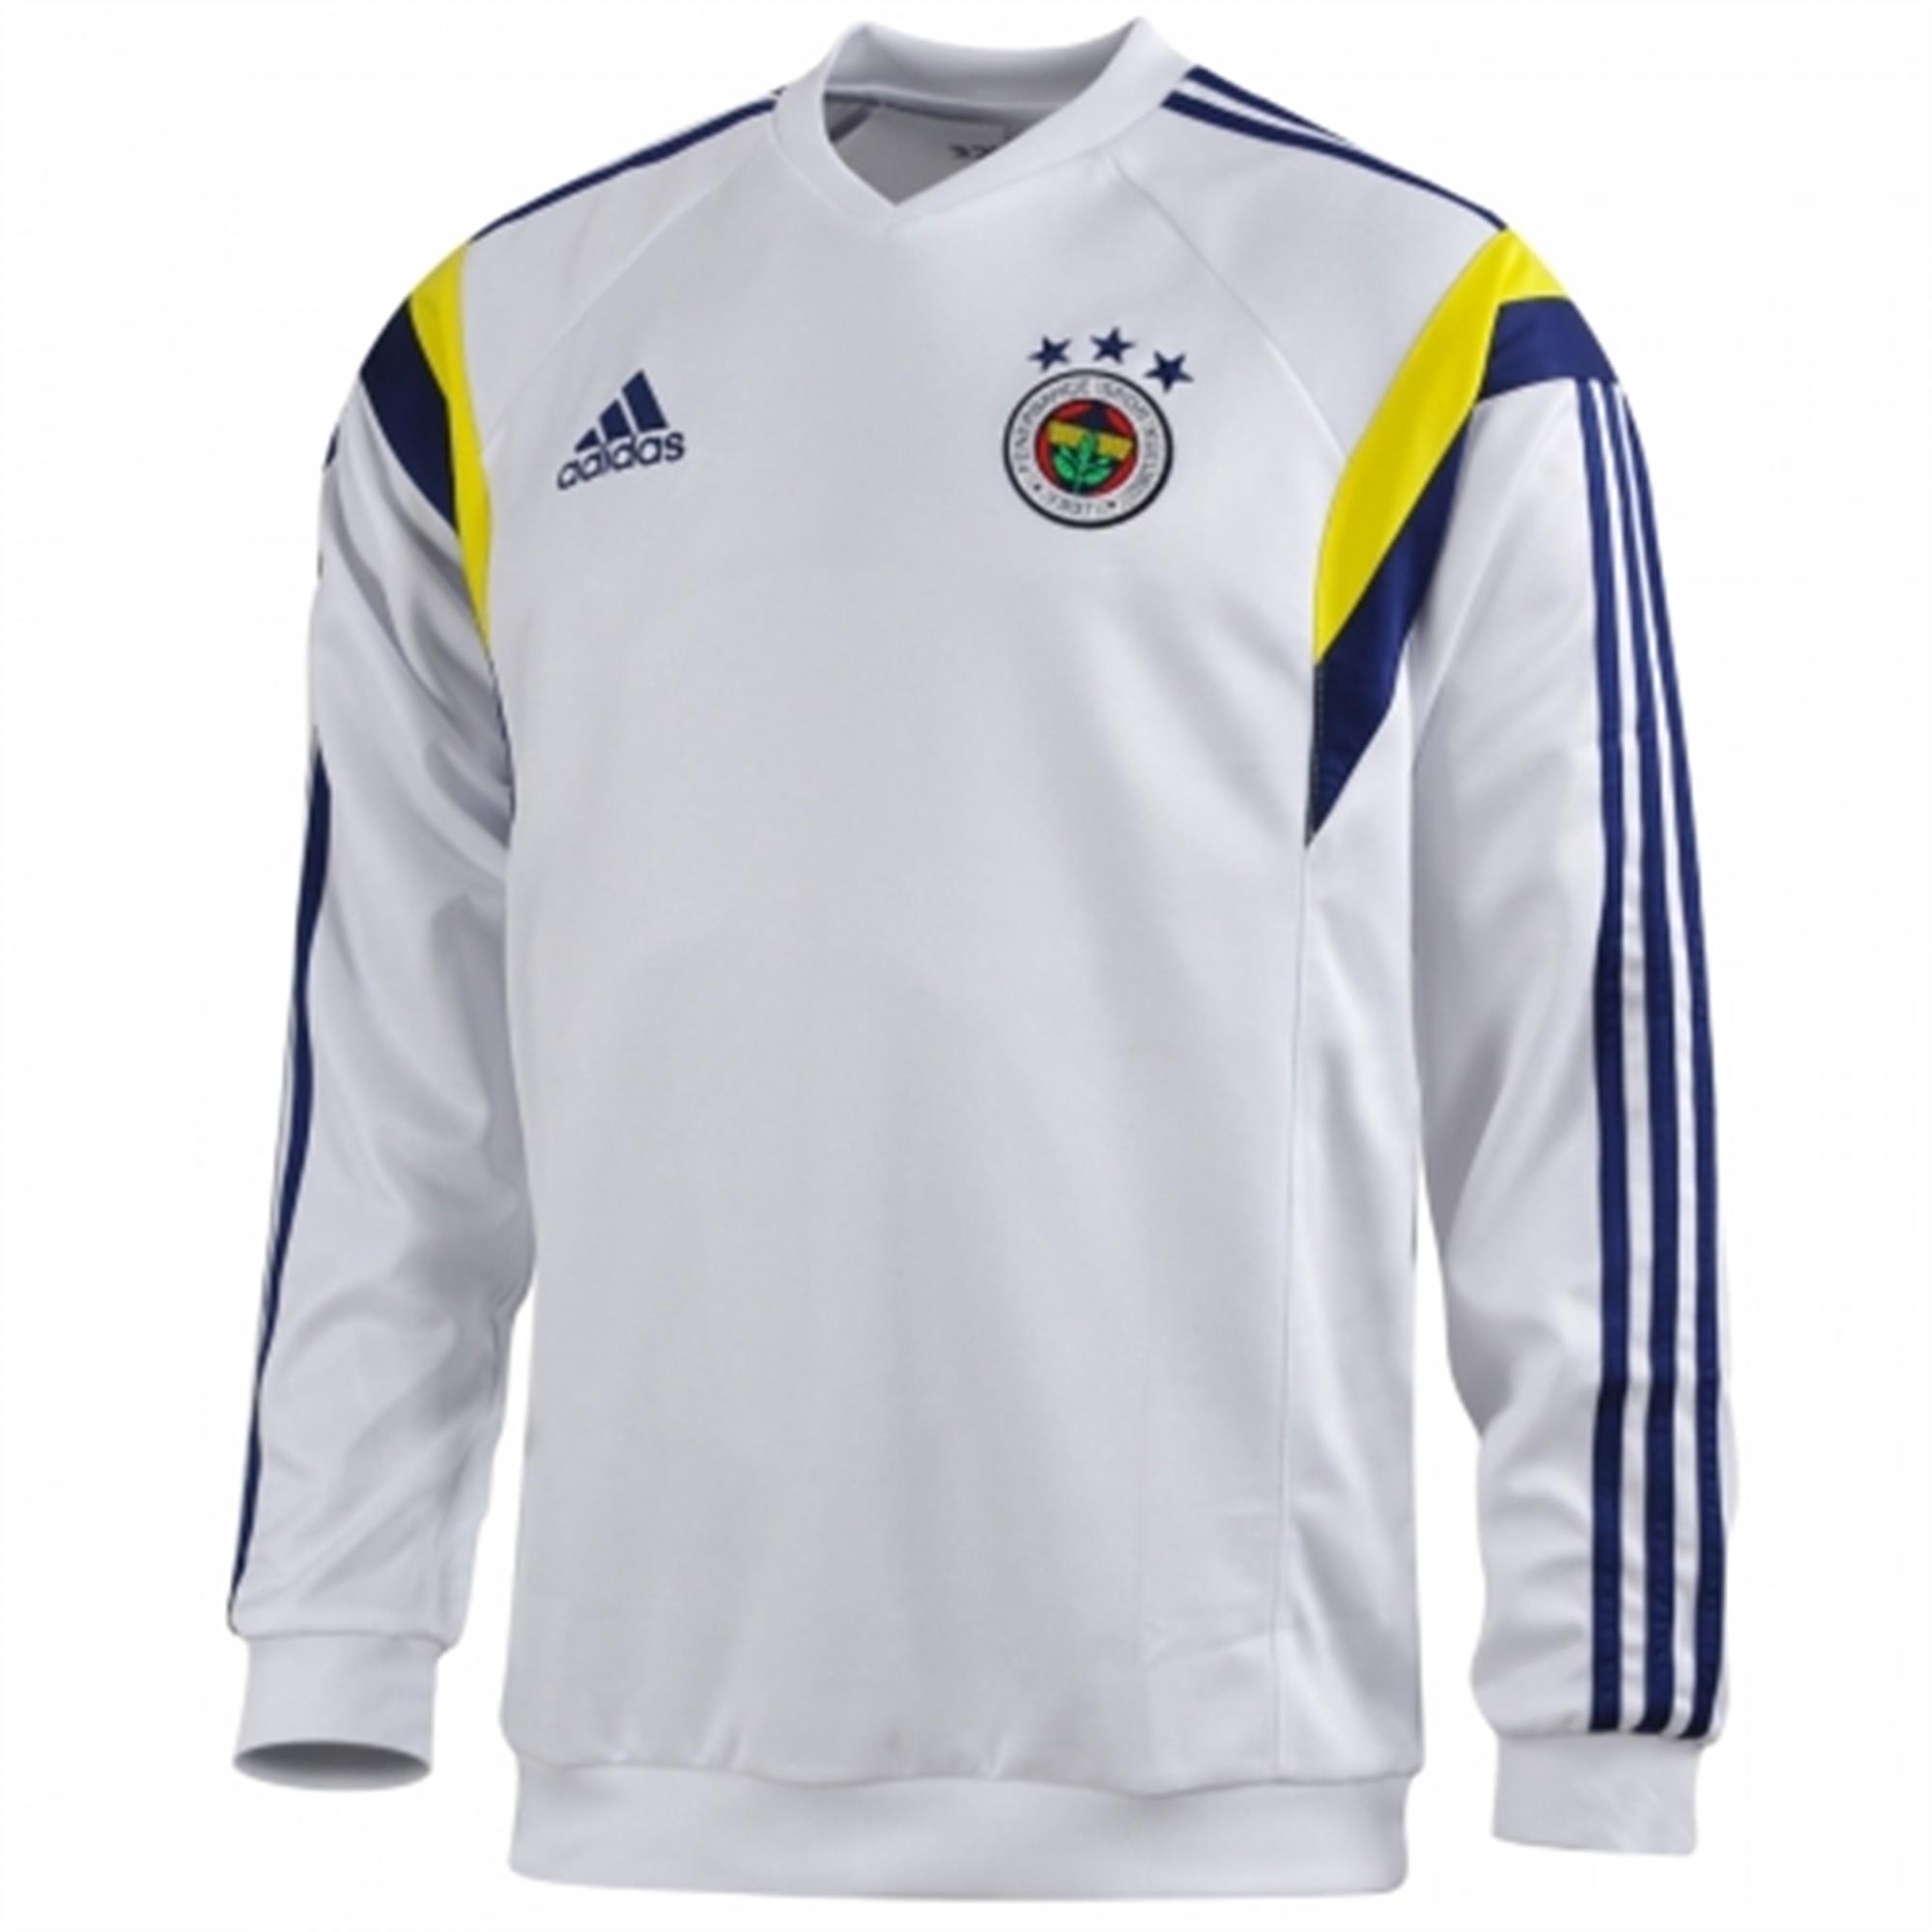 Adidas Fenerbahce Sk 2014 Erkek Sweatshirt H78968 Etichet Sport